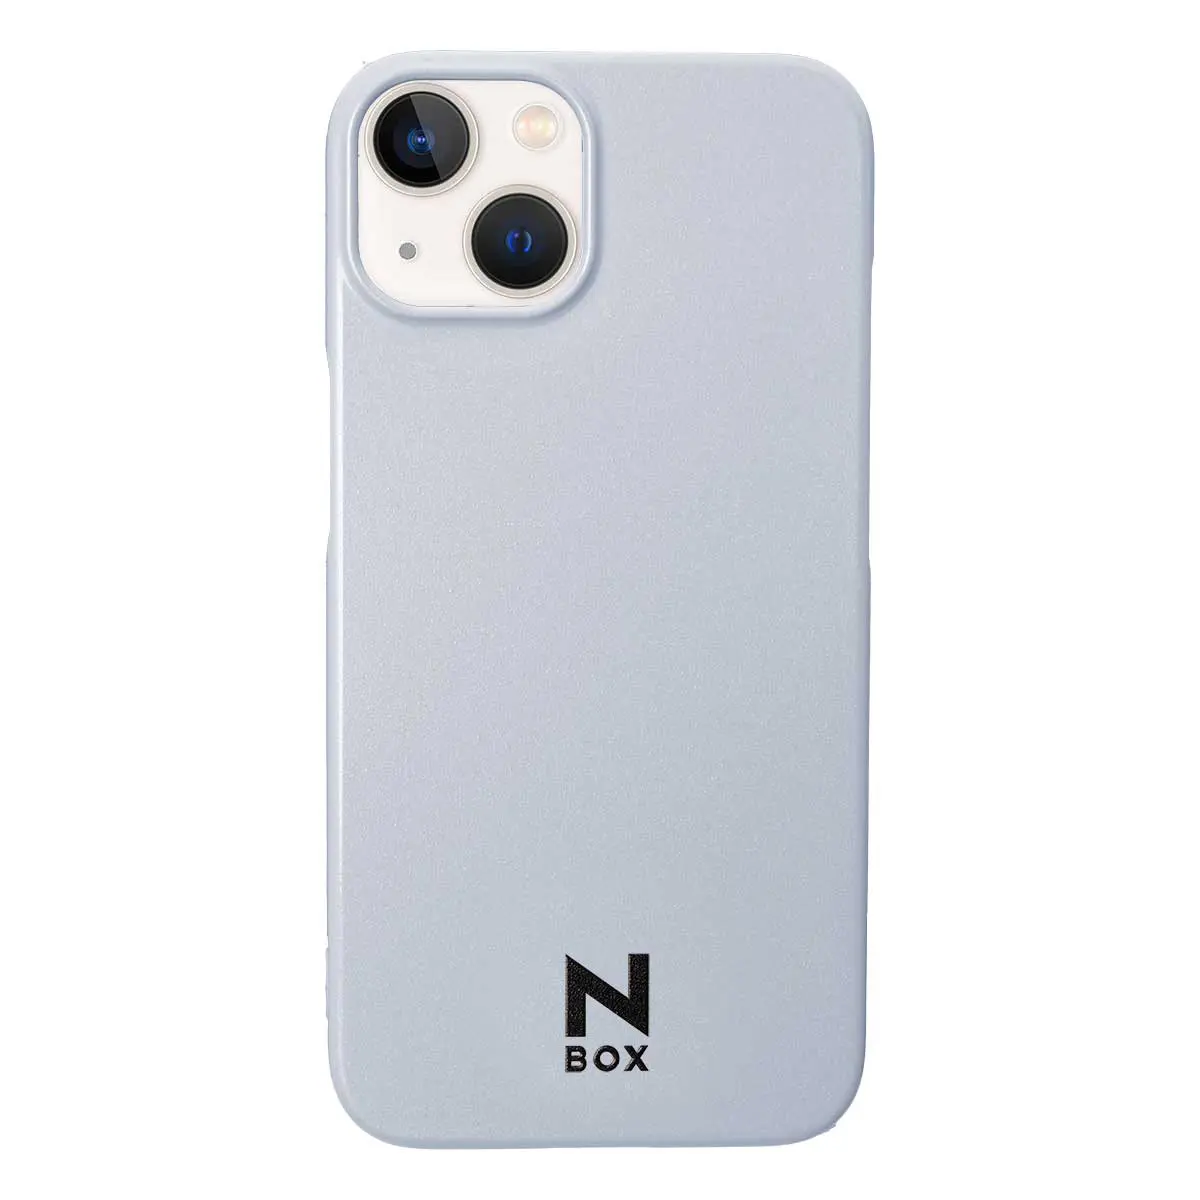 N-BOXのボディと同じカラー スマホケース『N-BOX スマホケース 